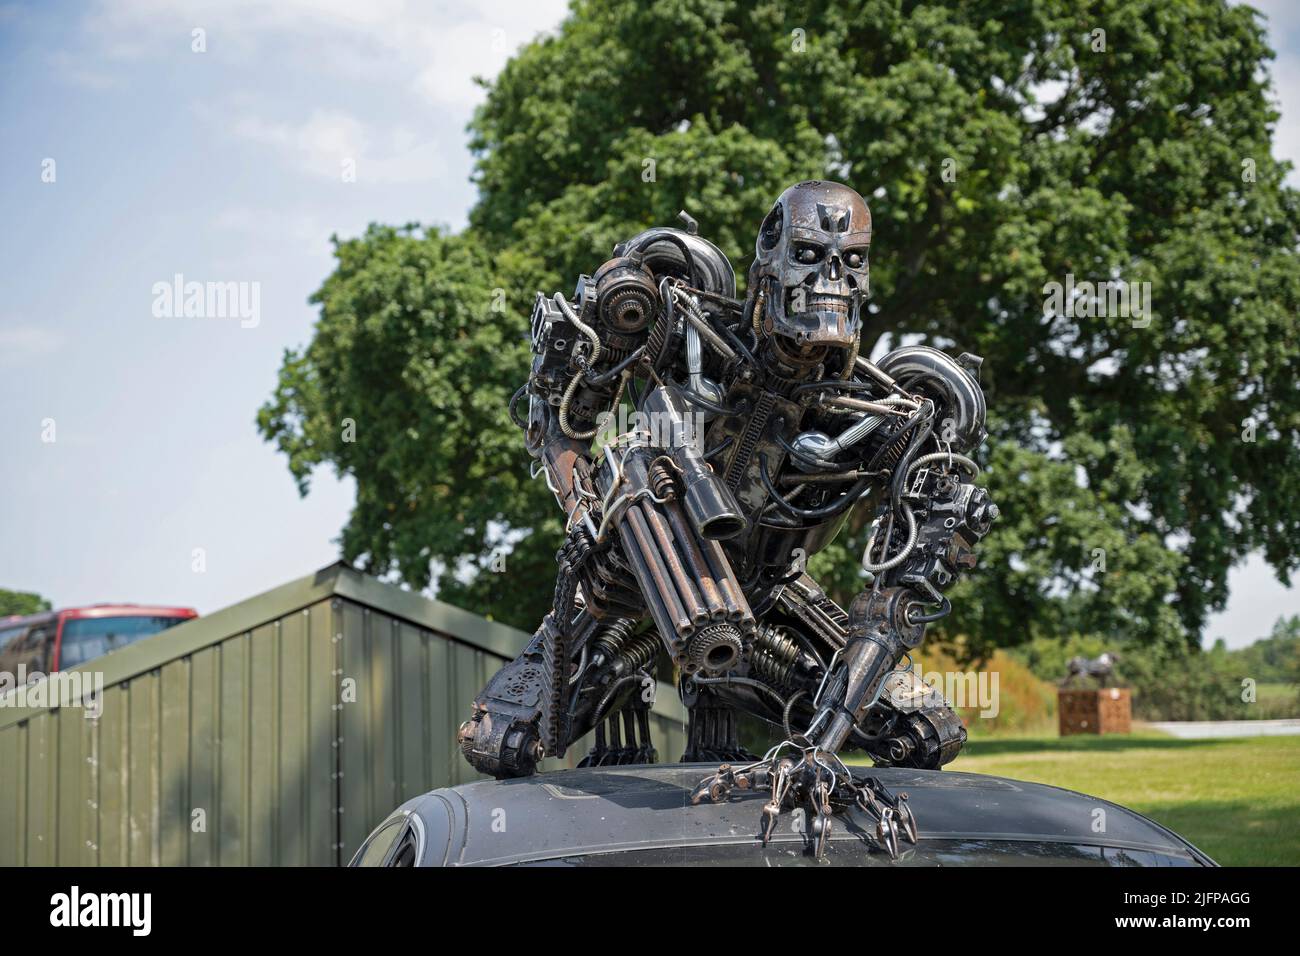 The British Ironwork Centre, Terminator Exhibit/Sculpture Stock Photo